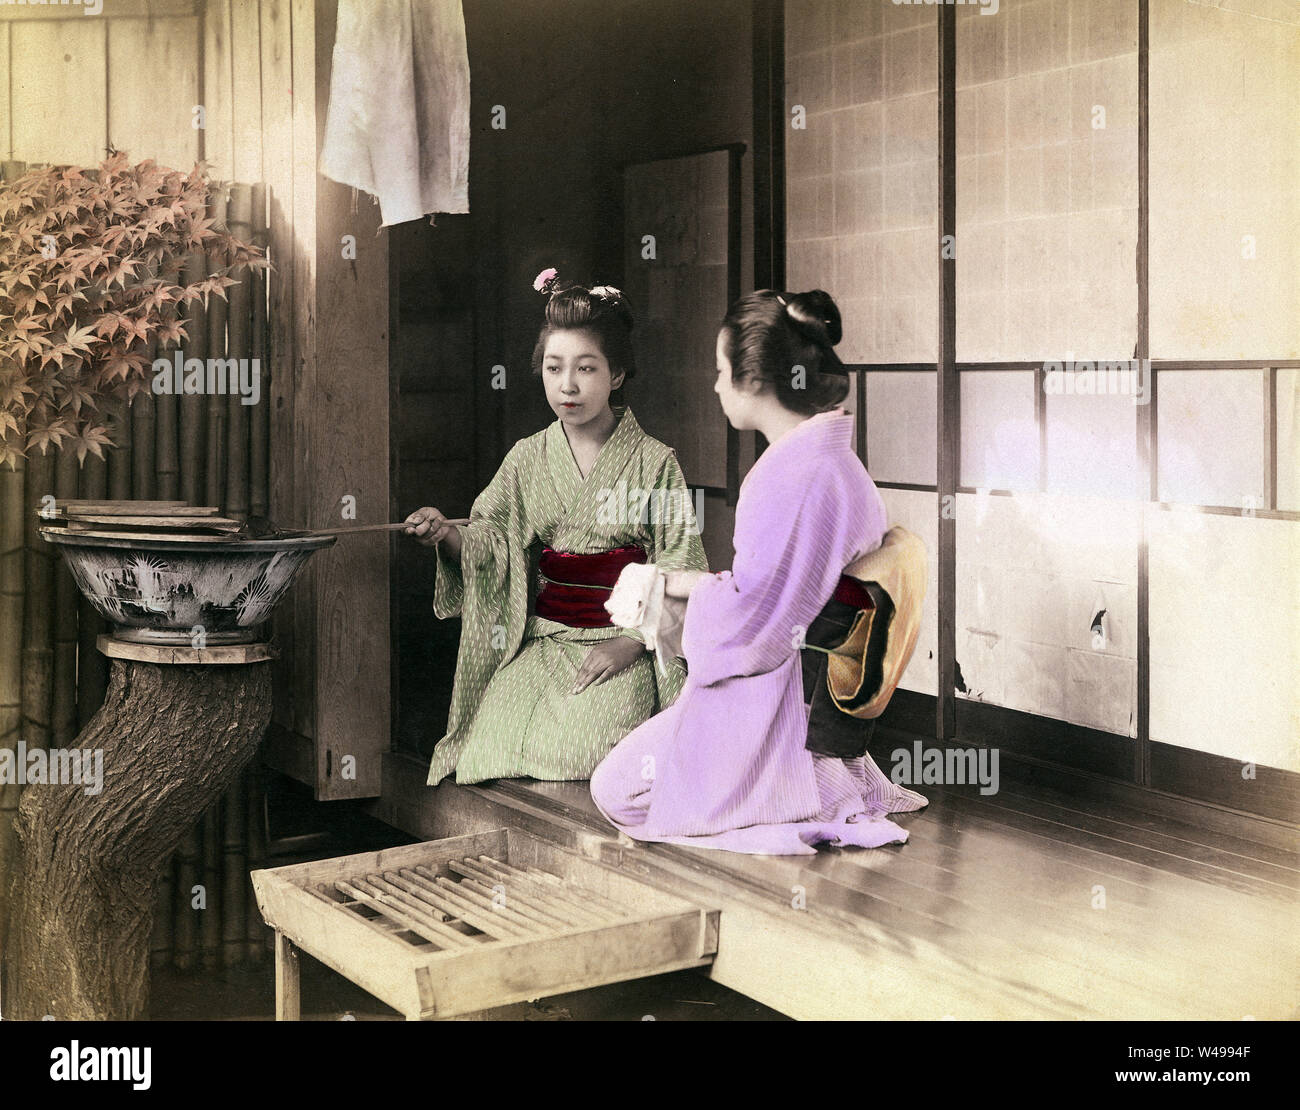 [ 1890 Giappone - Le donne giapponesi lavaggio delle mani ] - una donna in kimono utilizza un Hishaku (siviera) per spruzzare acqua sulle mani di un'altra donna che sta lavando le mani. Le due ragazze sono seduti sulla veranda di una casa privata. Lavaggio delle mani (Temizu) è un importante rituale di purificazione durante l'inserimento di sacrario scintoista motivi, ma è stato anche fatto al momento di entrare in una casa privata. Xix secolo albume vintage fotografia. Foto Stock